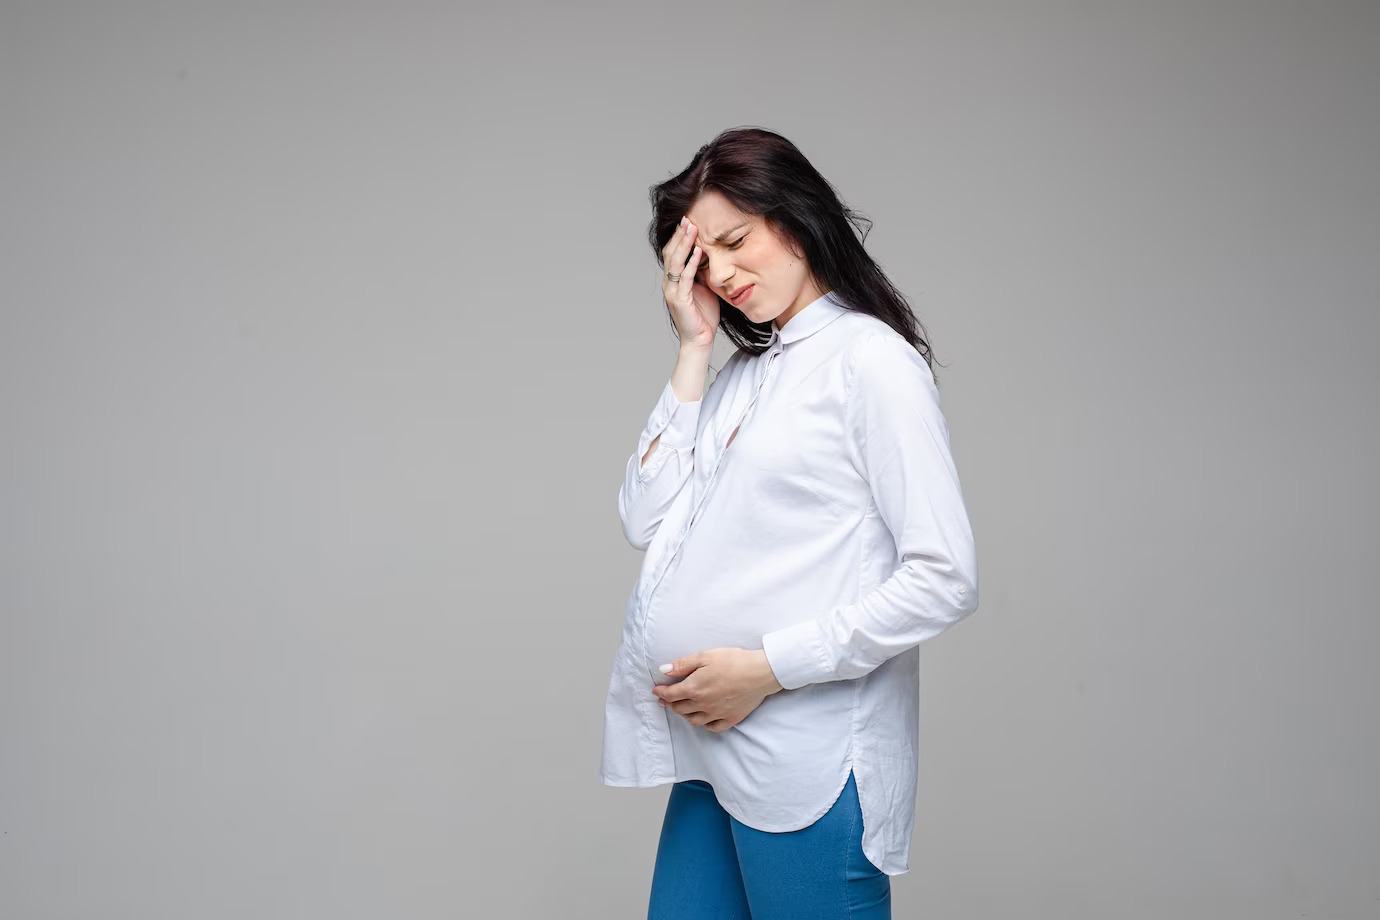 De ce pot aparea mirosurile neplacute in timpul sarcinii si cum trebuie sa actionezi